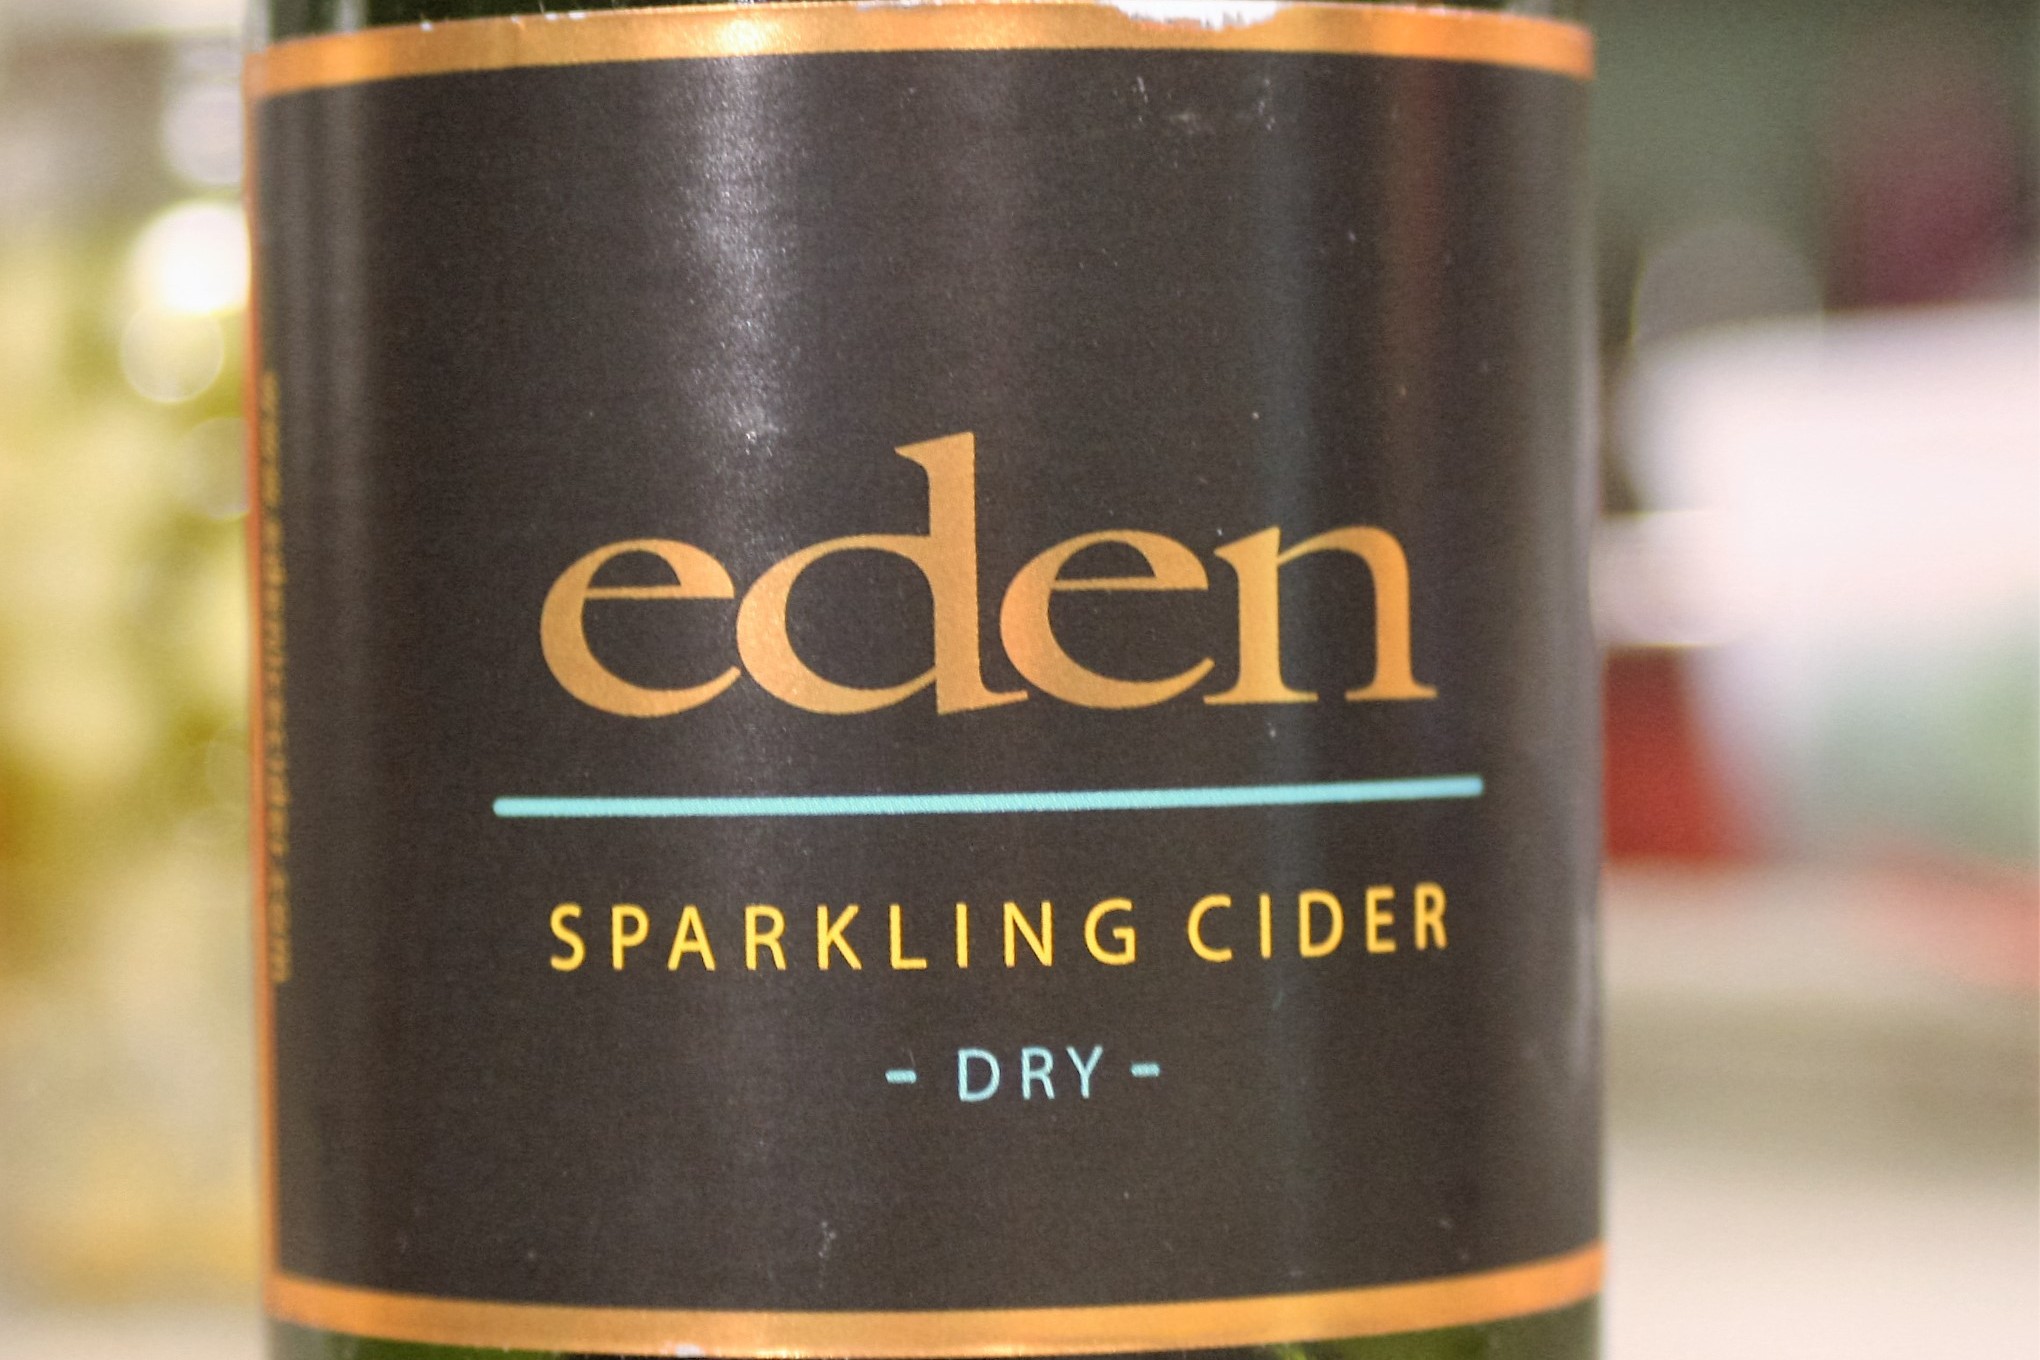 Eden Ice Cider Dry Sparkling Cider NV